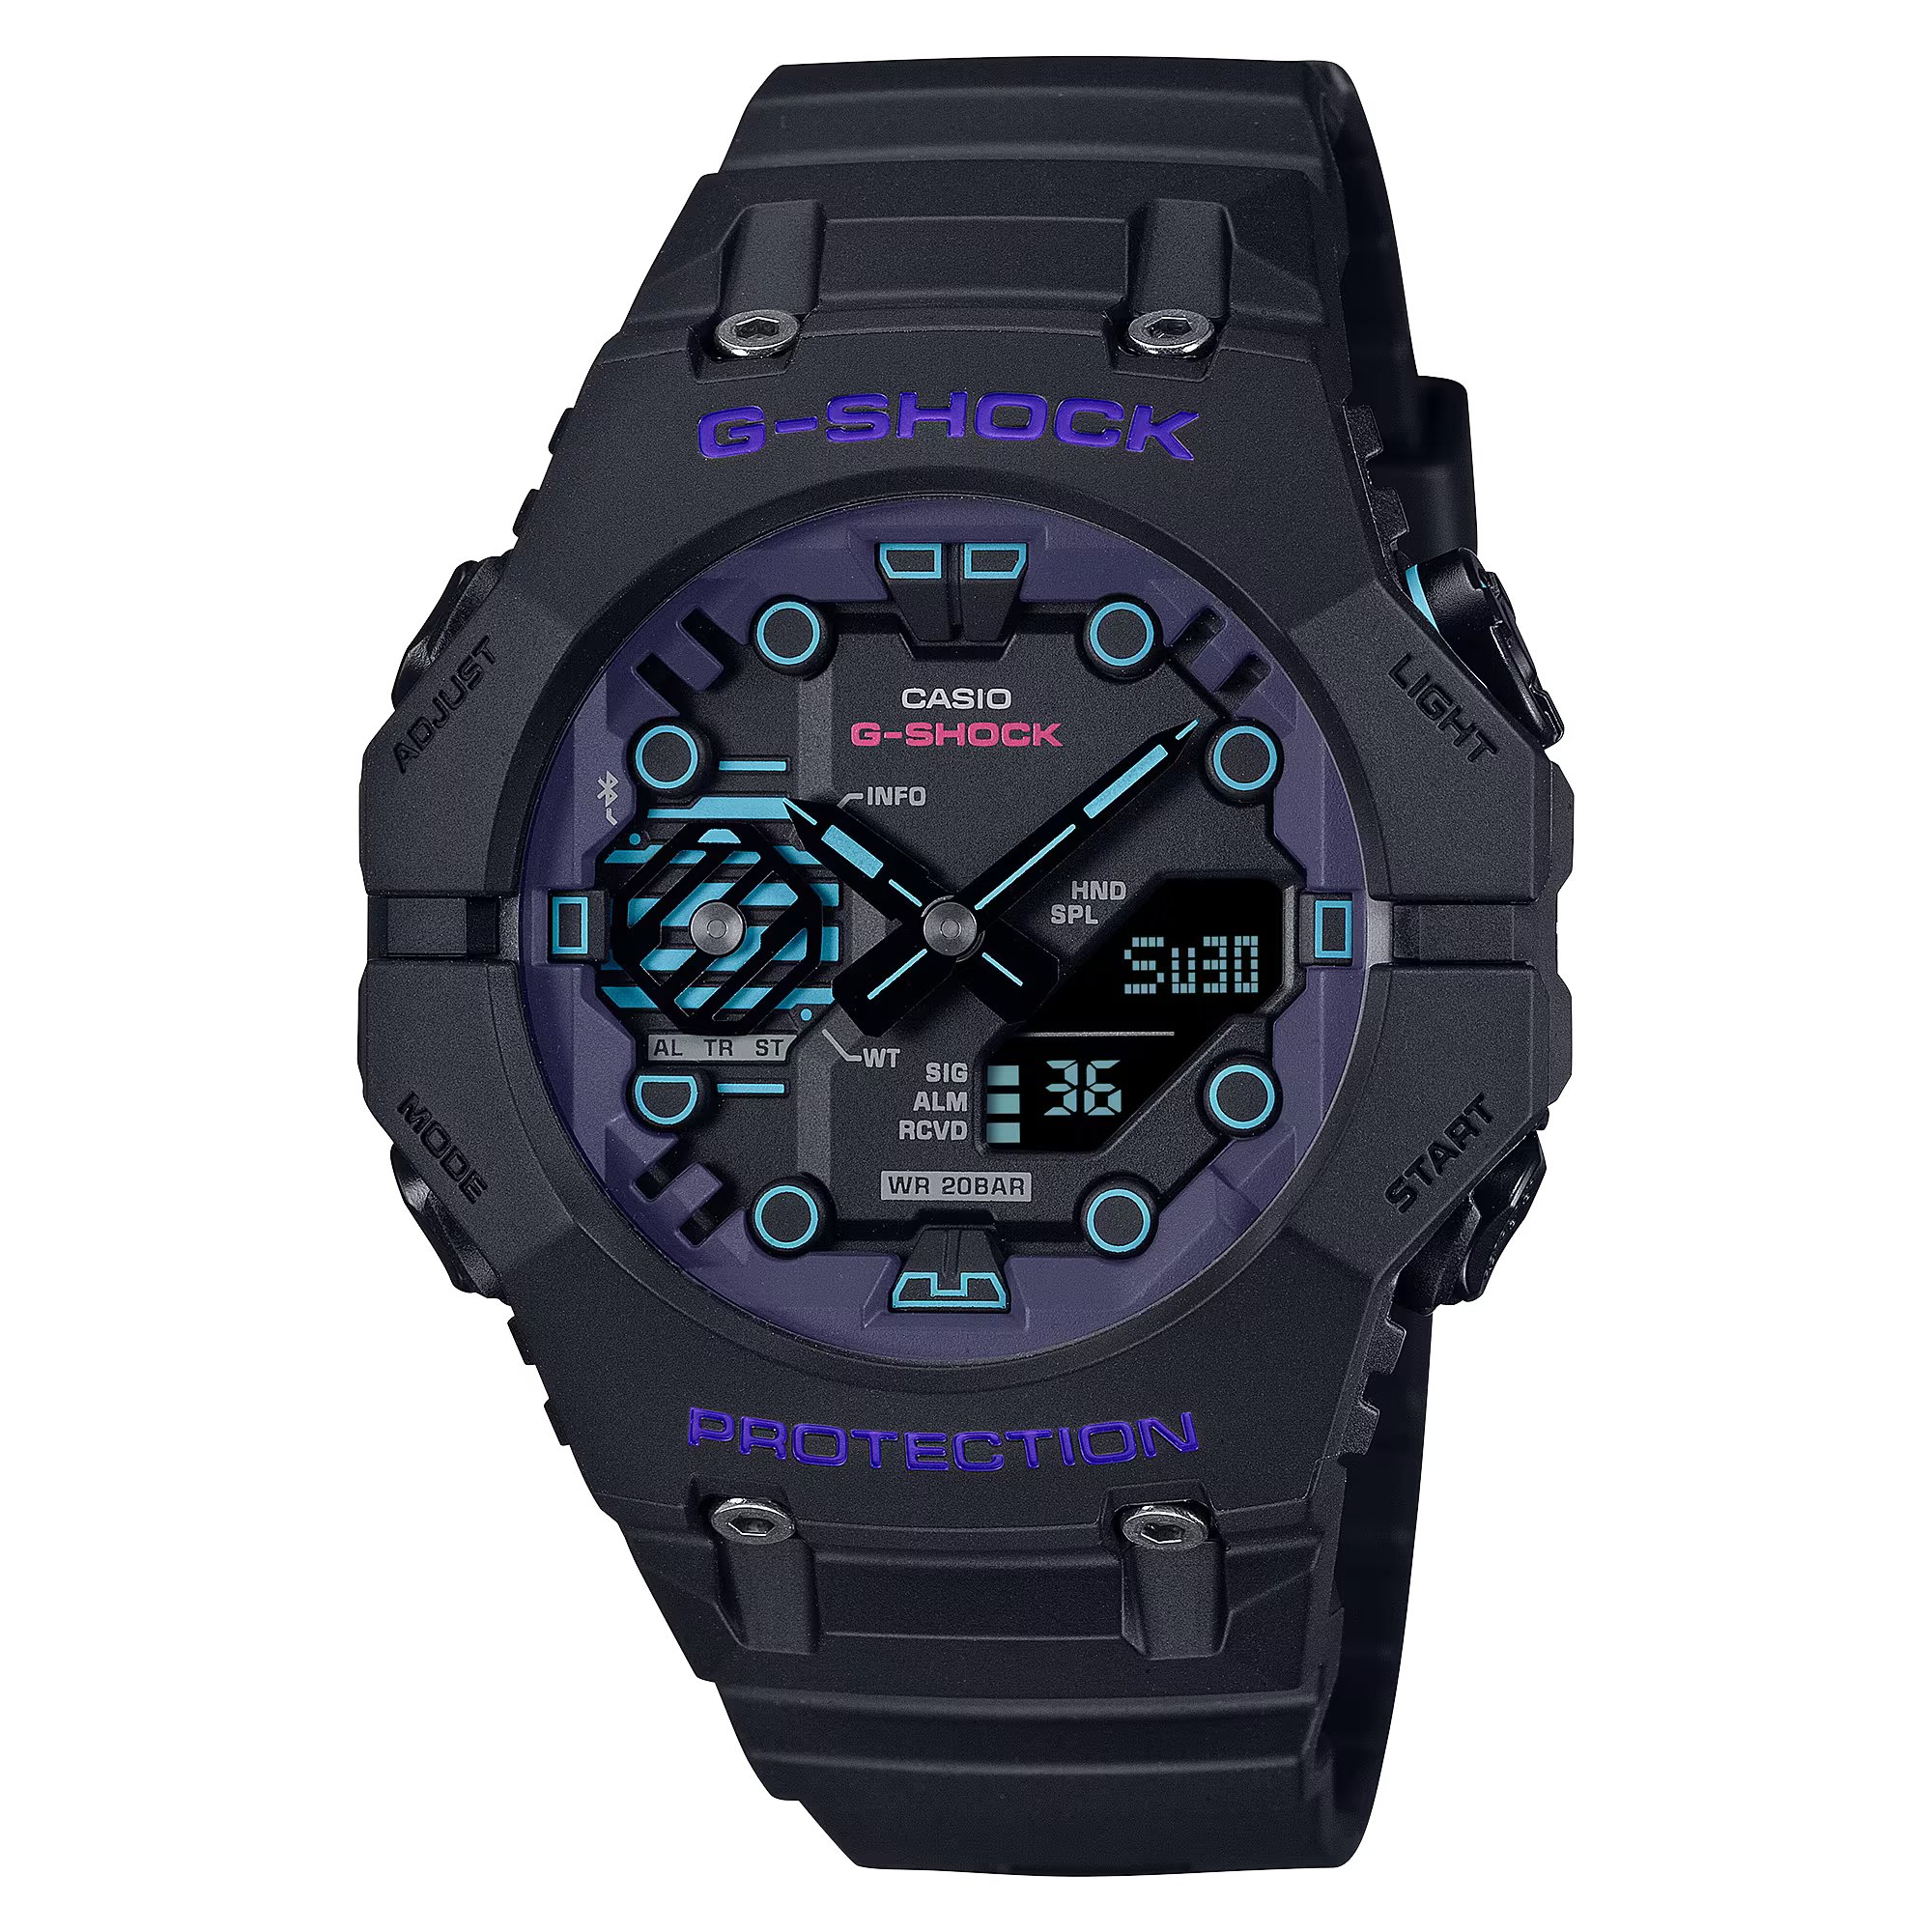 値引きする CASIO 腕時計 - G-SHOCK GA-B001CBR-1AJF Amazon 時計